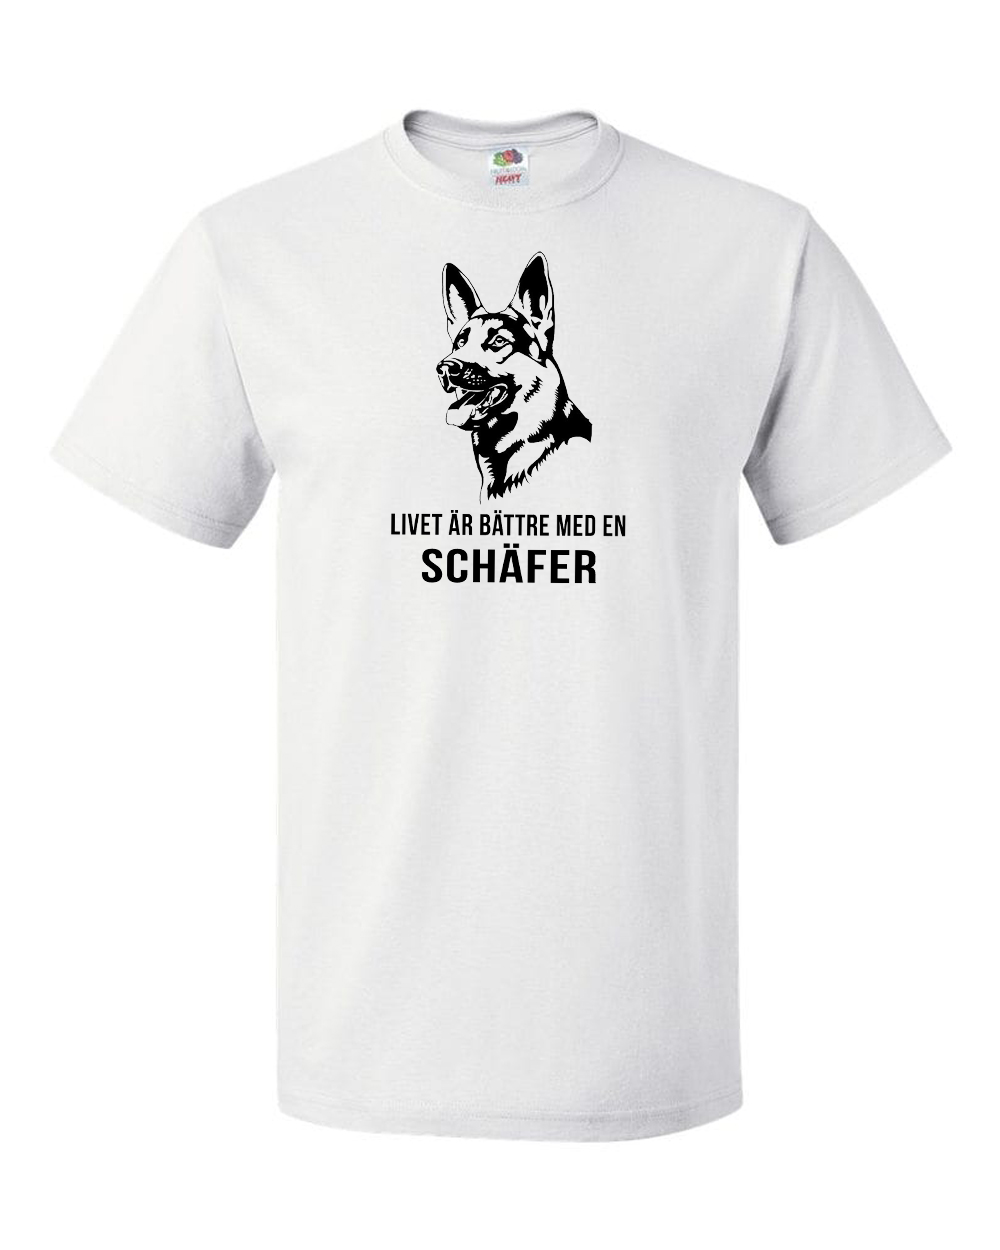 Livet är bättre med en Schäfer T-shirt